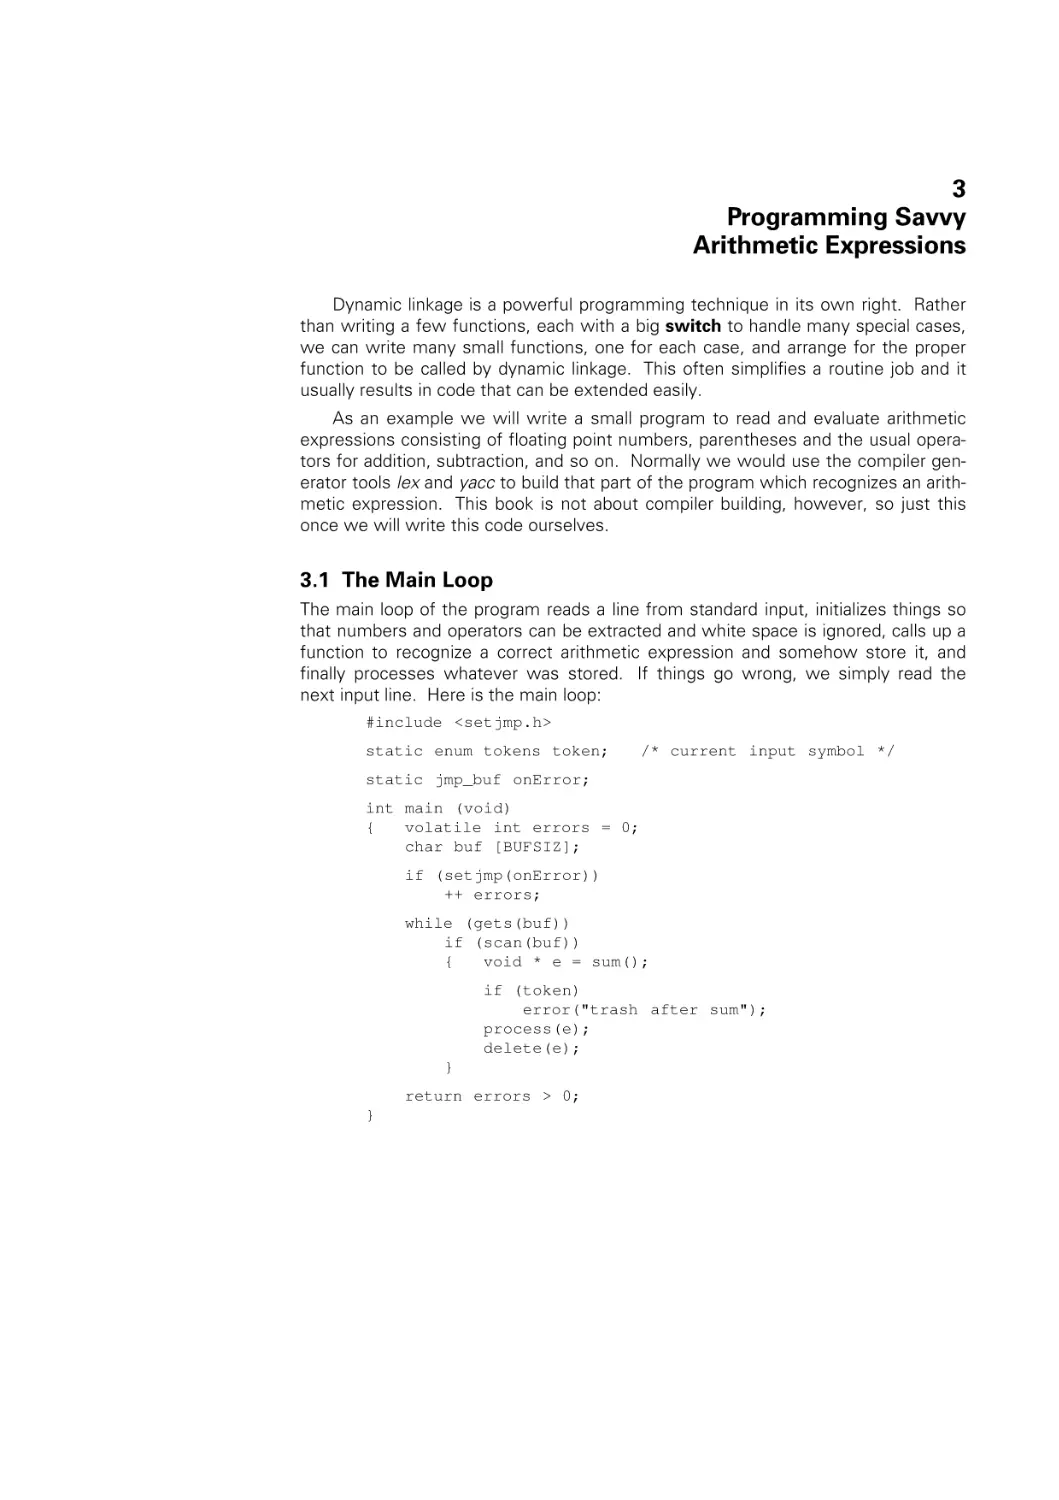 Programming savvy Arithmetic Expressions
Main Loop